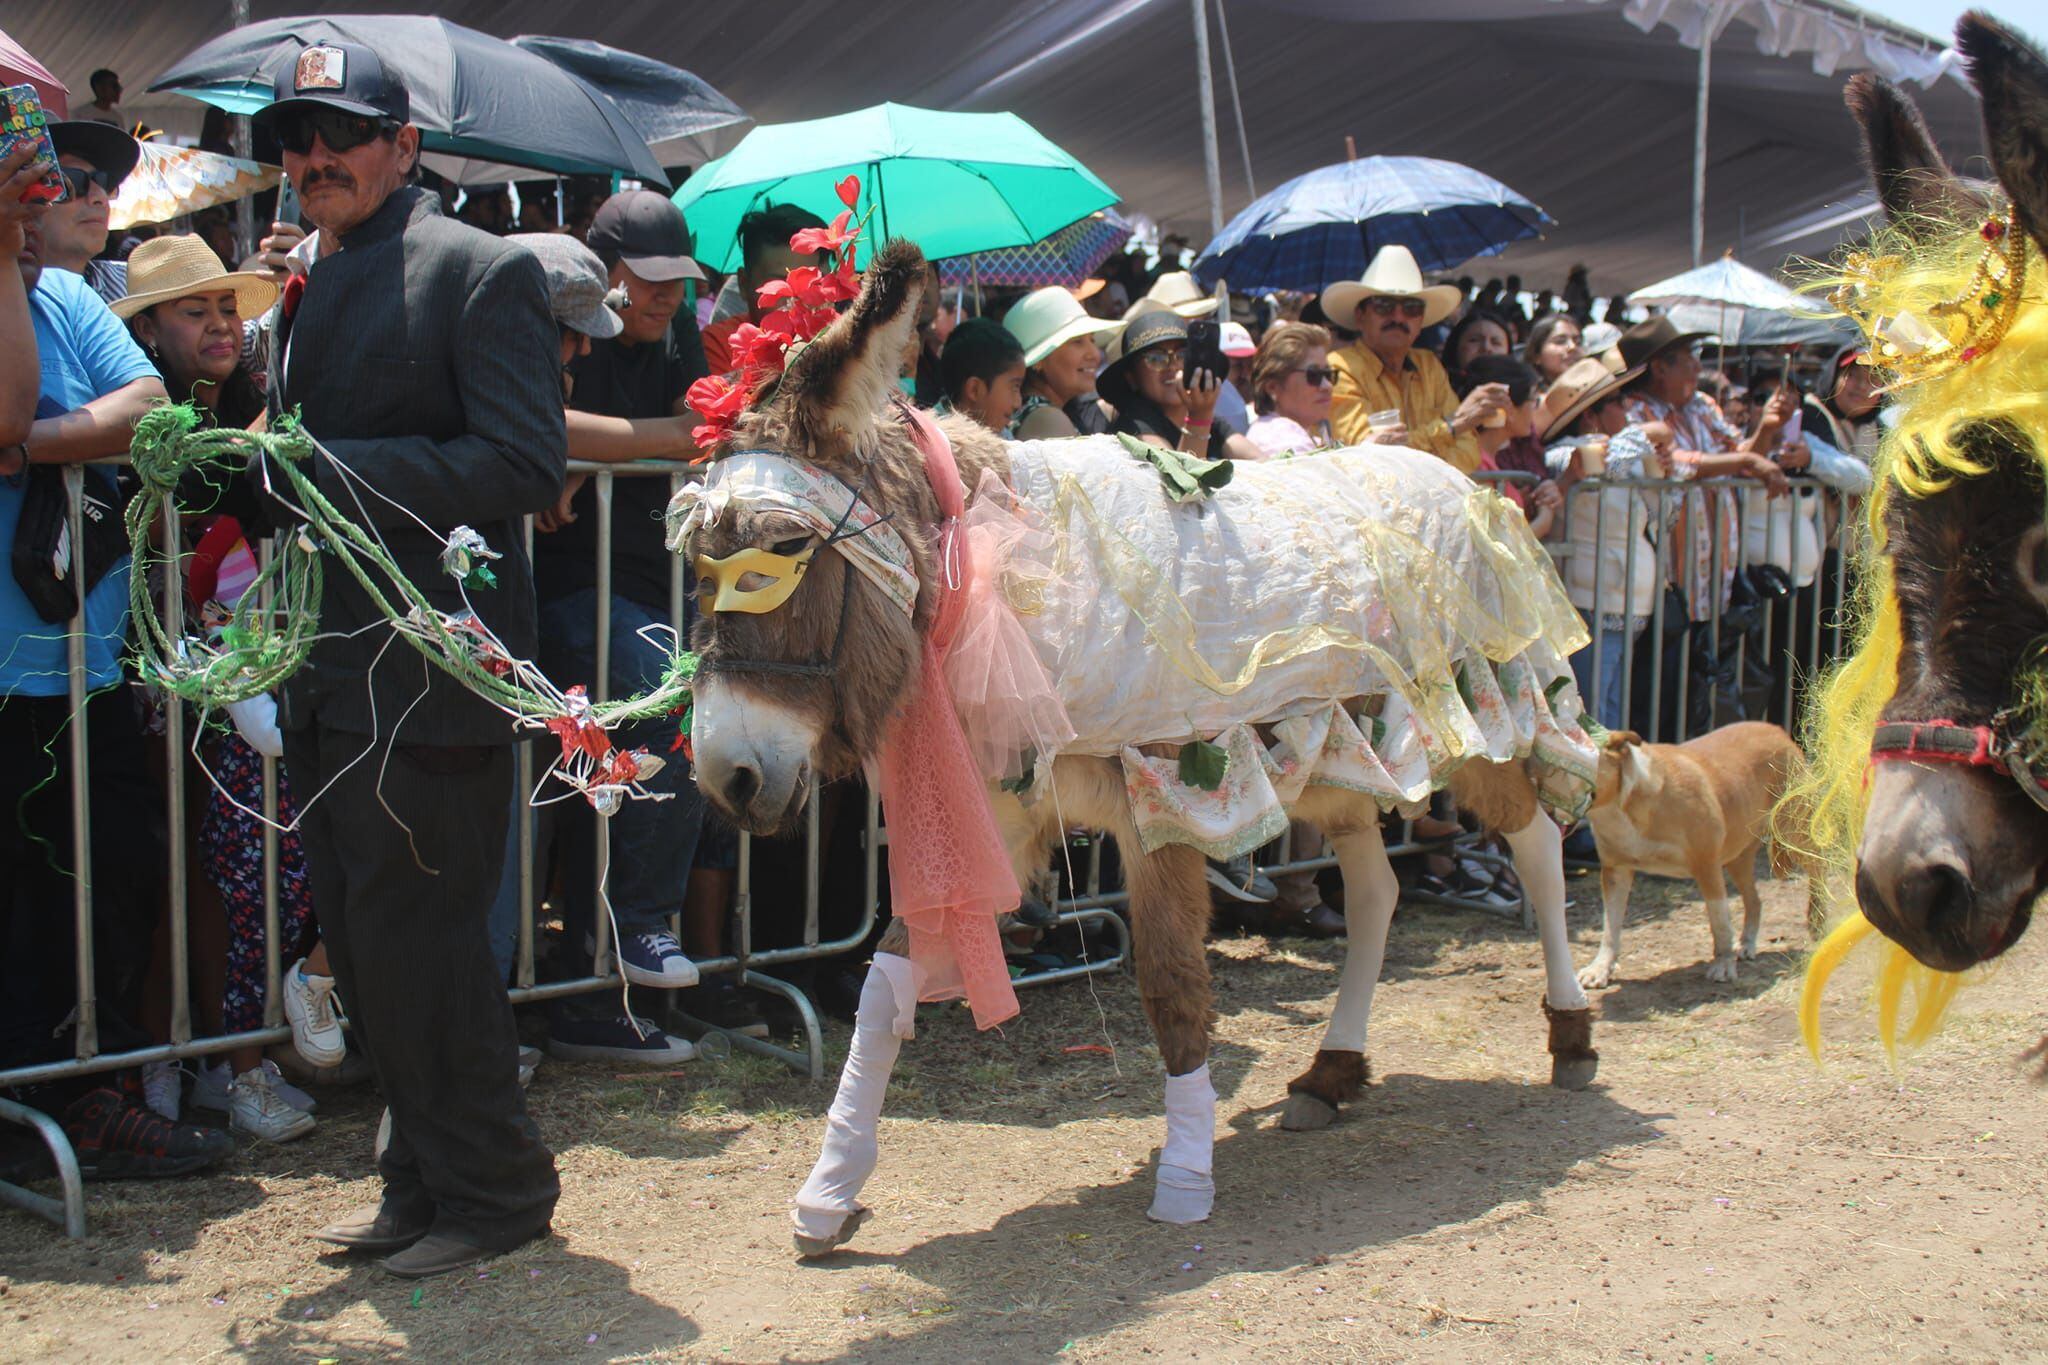 Los trajes hechos a mano cautivaron a todos los asistentes.(Facebook/Feria Nacional del Burro Otumba 2024).

Burros, equinos, feria nacional del burro 2024, Otumba, México, disfraces, polo, animales, mascotas